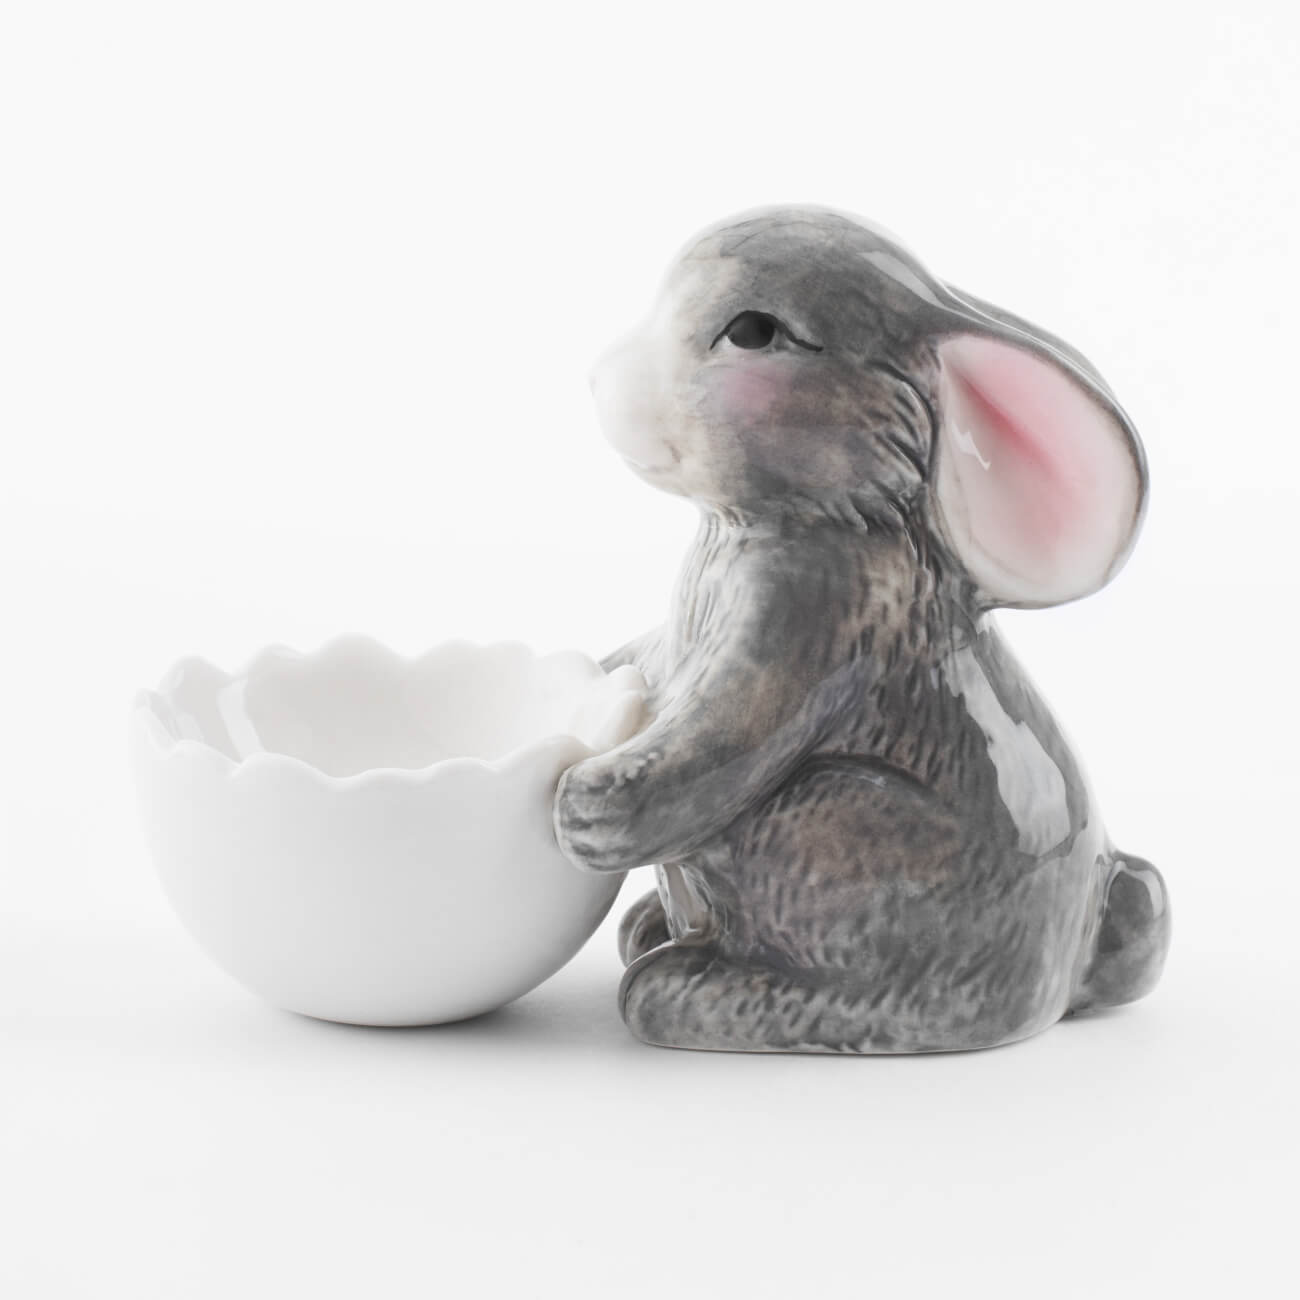 Подставка для яйца, 11 см, фарфор P, бело-серая, Кролик со скорлупой, Pure Easter блюдо 30х23 см фарфор n белое кролик в ах pure easter